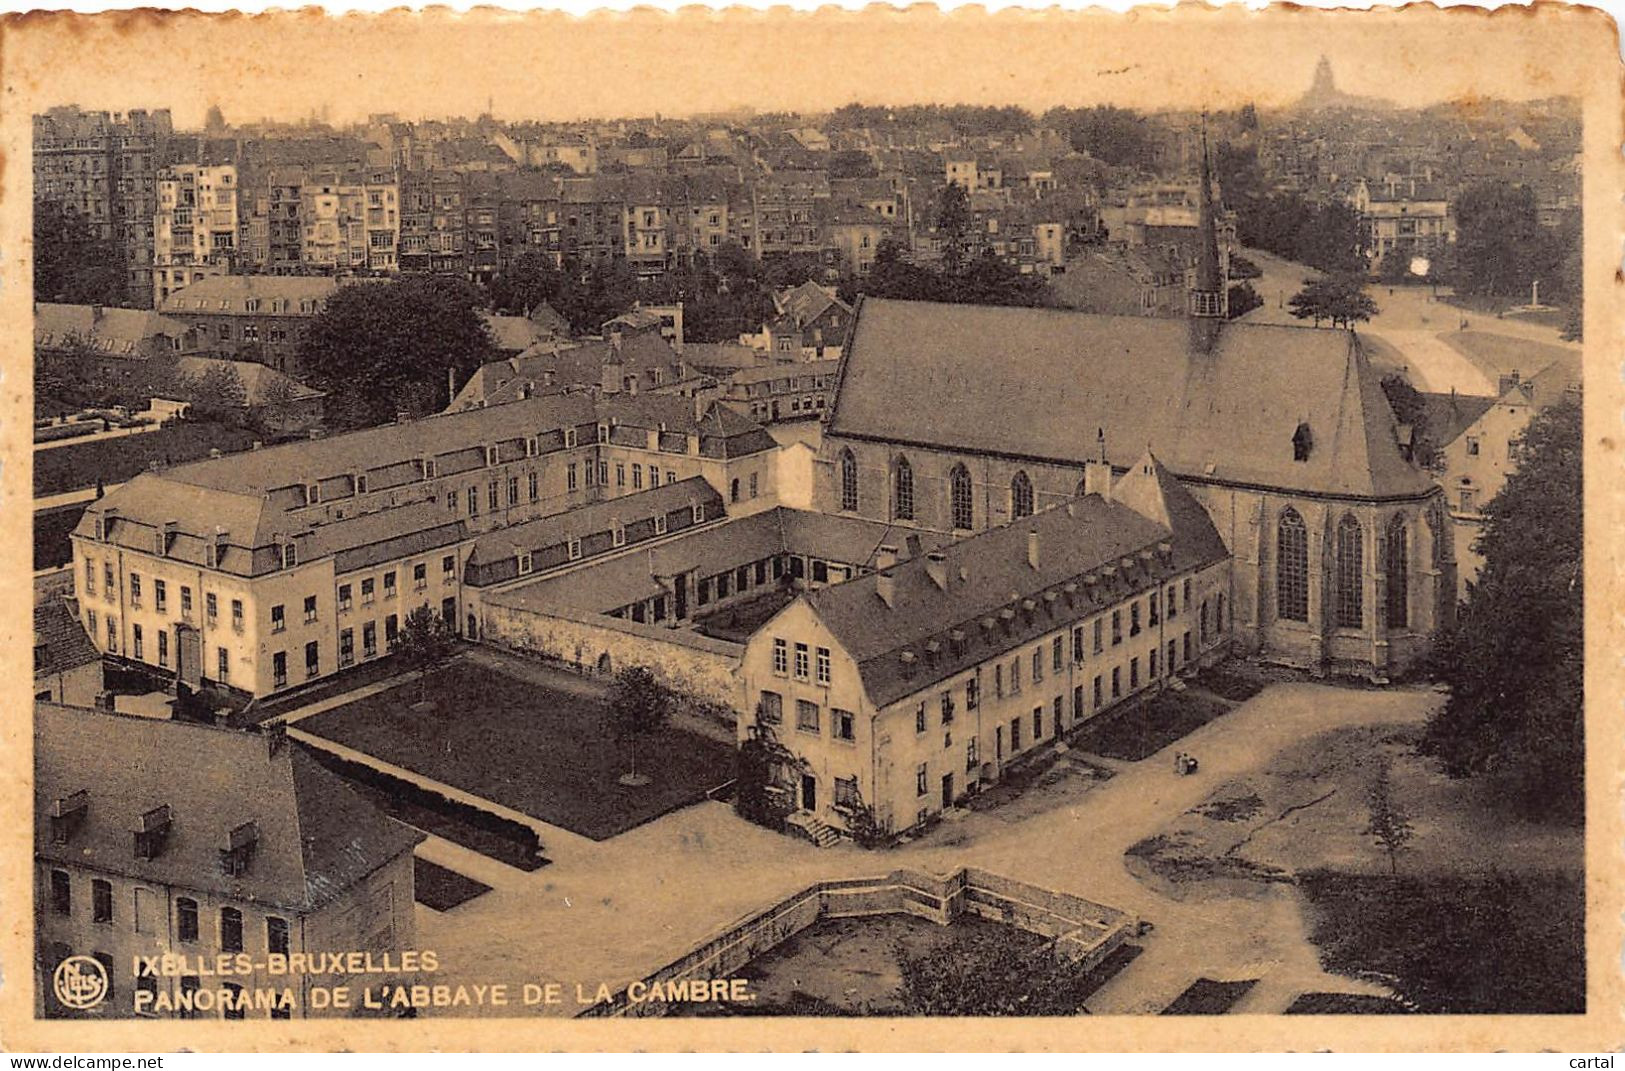 IXELLES-BRUXELLES - Panoram De L'Abbaye De La Cambre. - Ixelles - Elsene